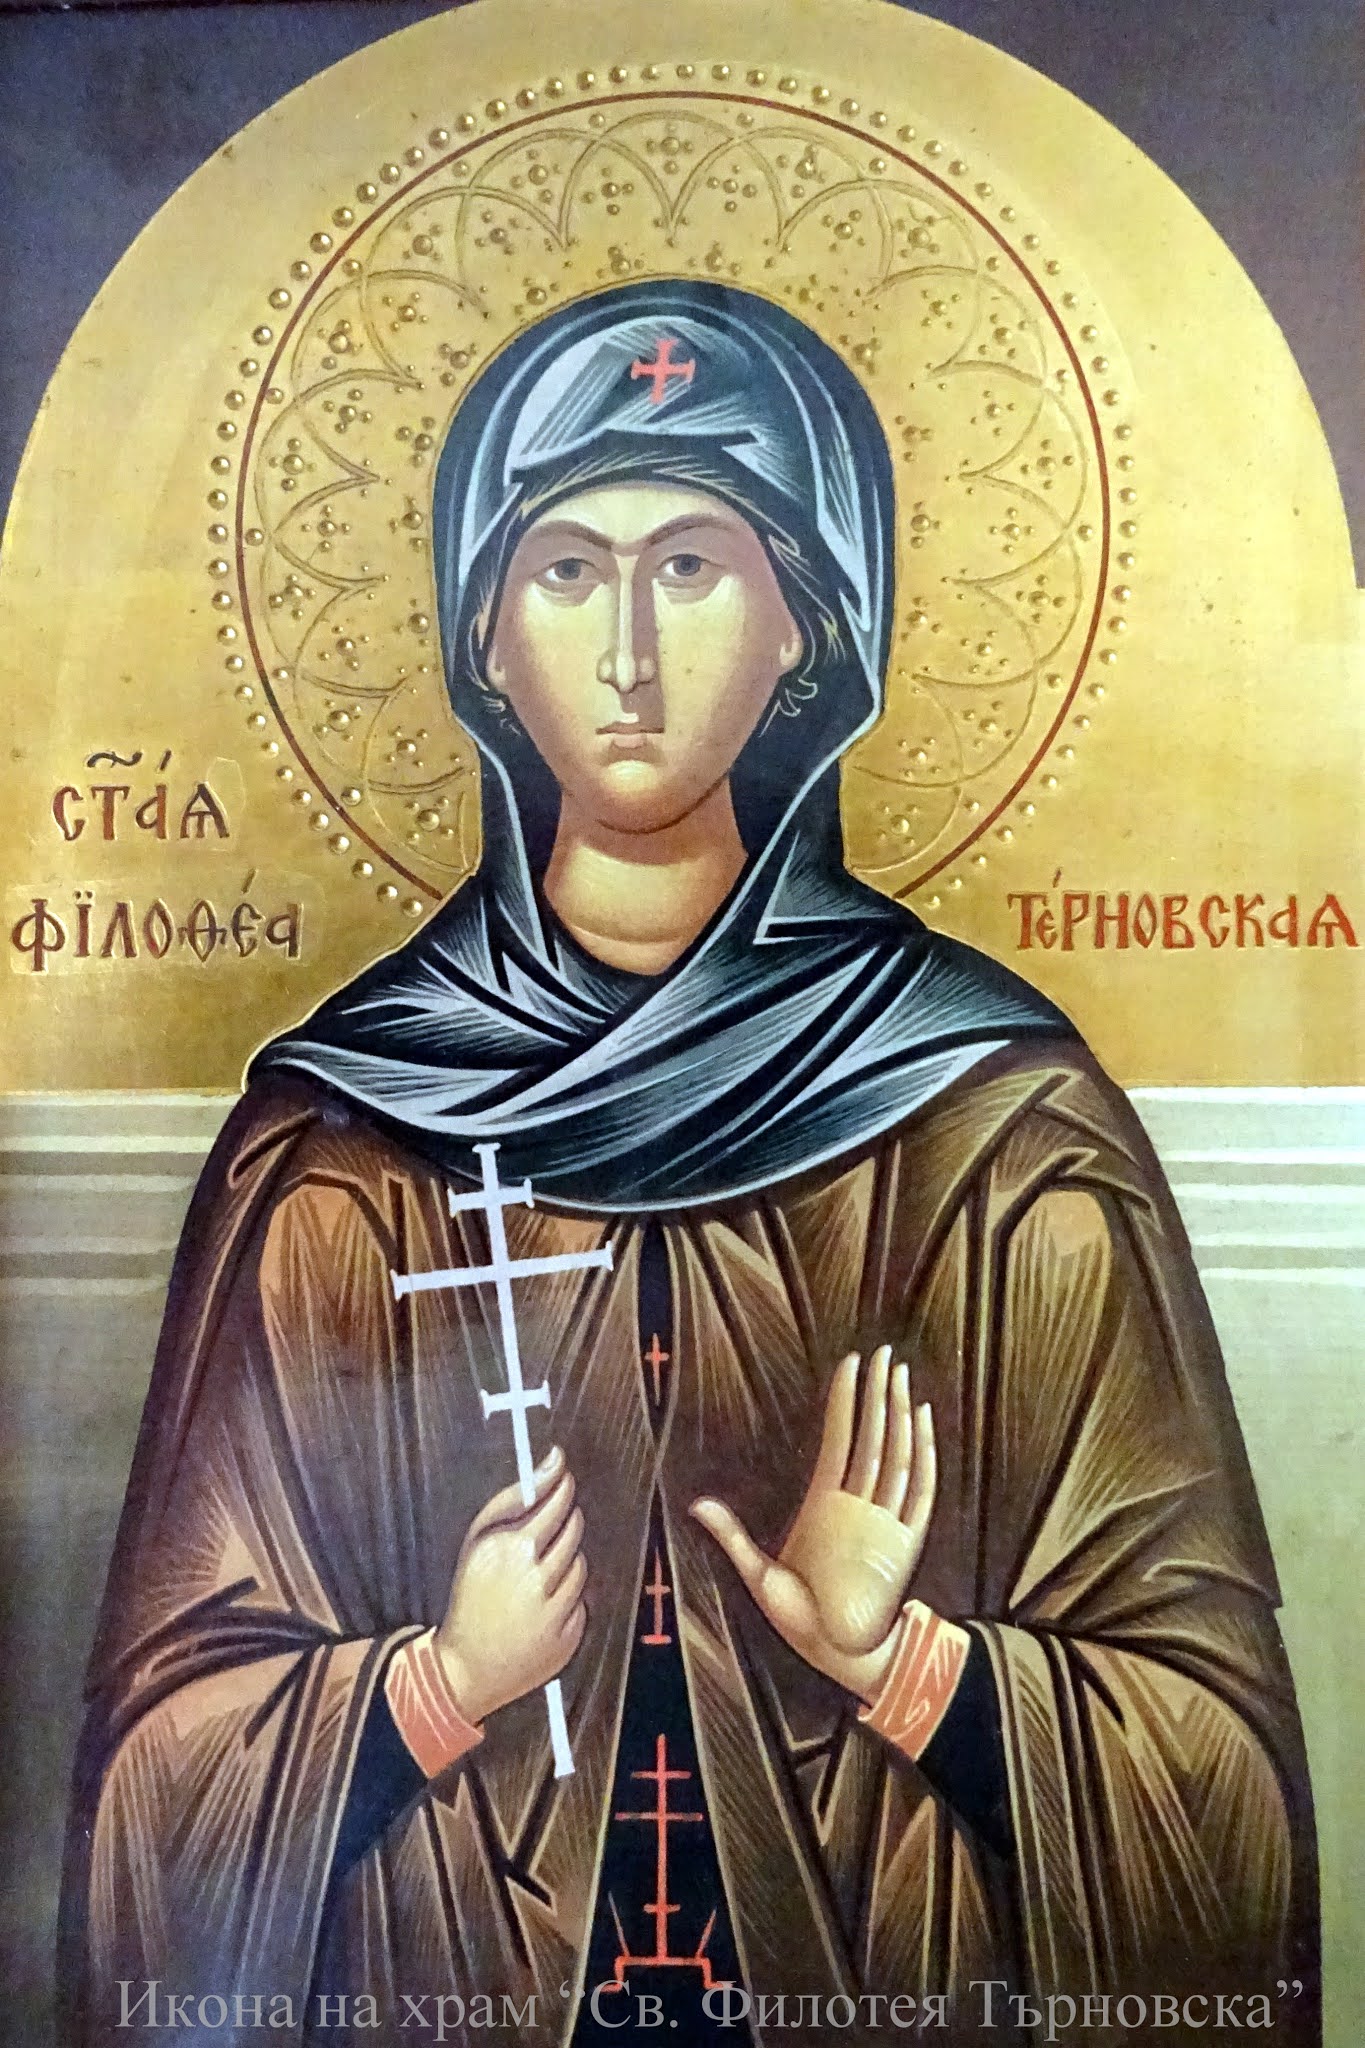 Icon-of-Saint-Feothea-Feotheus-of-Tarnovo-Bulgaria-icon-in-her-Church-saint-Feothea-of-Trnovo